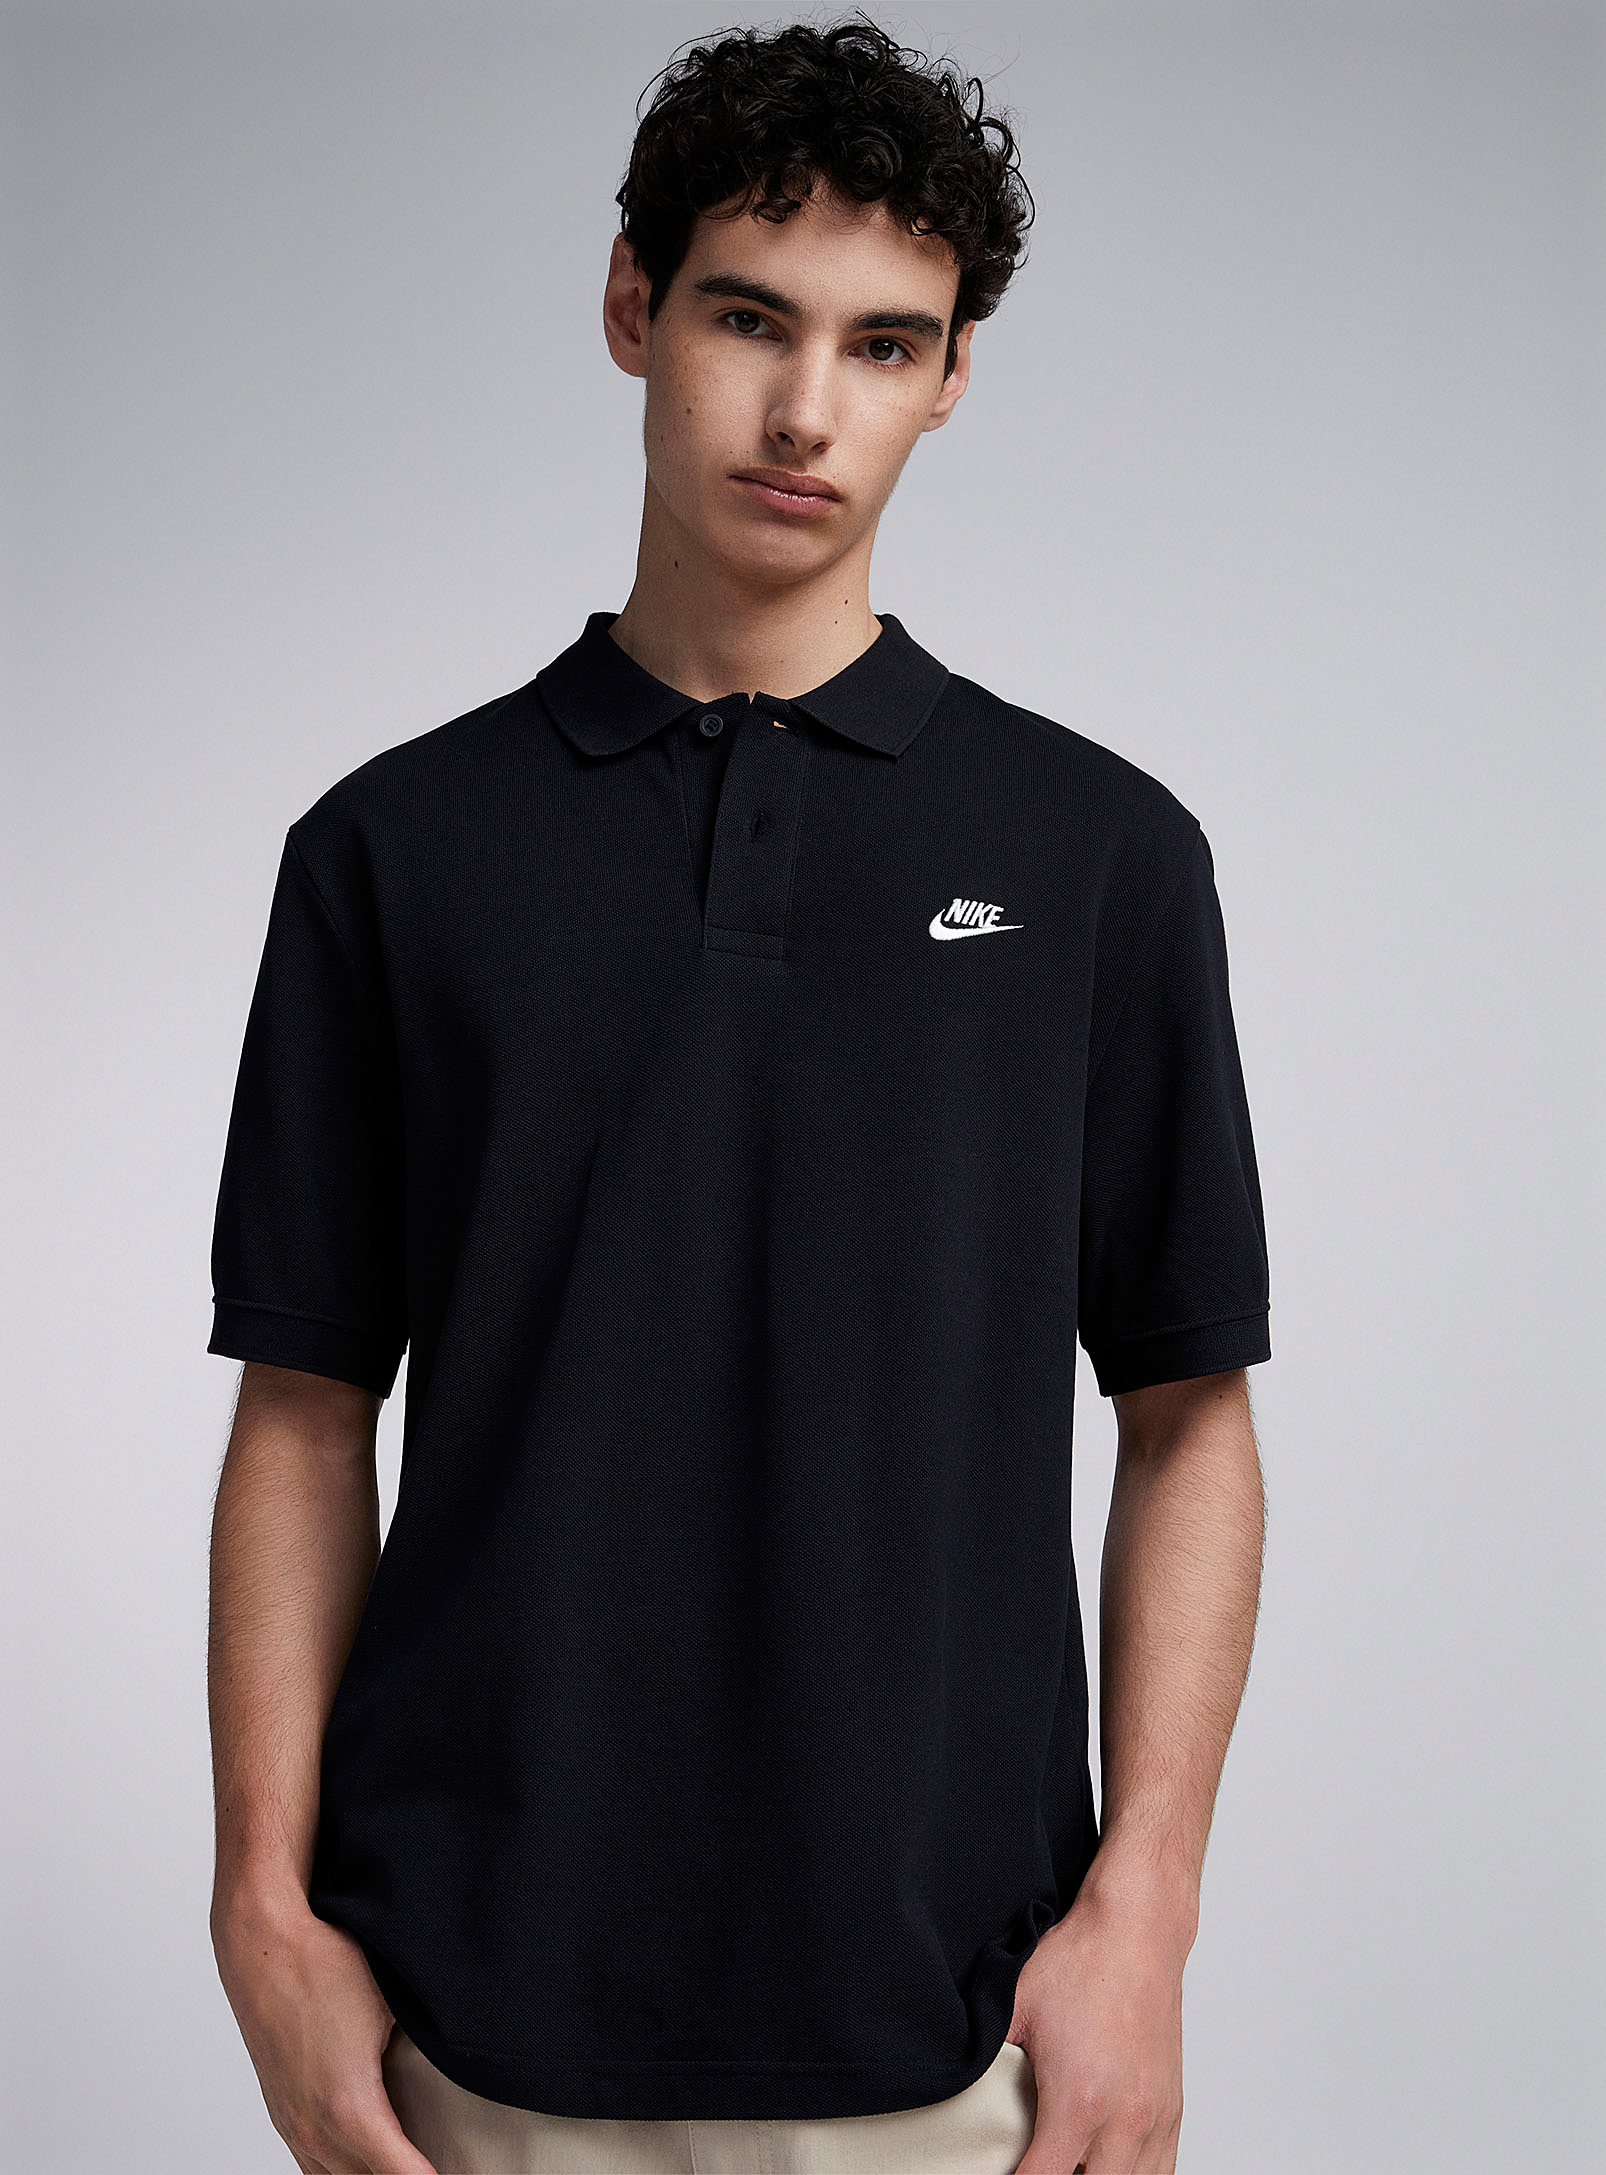 Nike Polo In Black